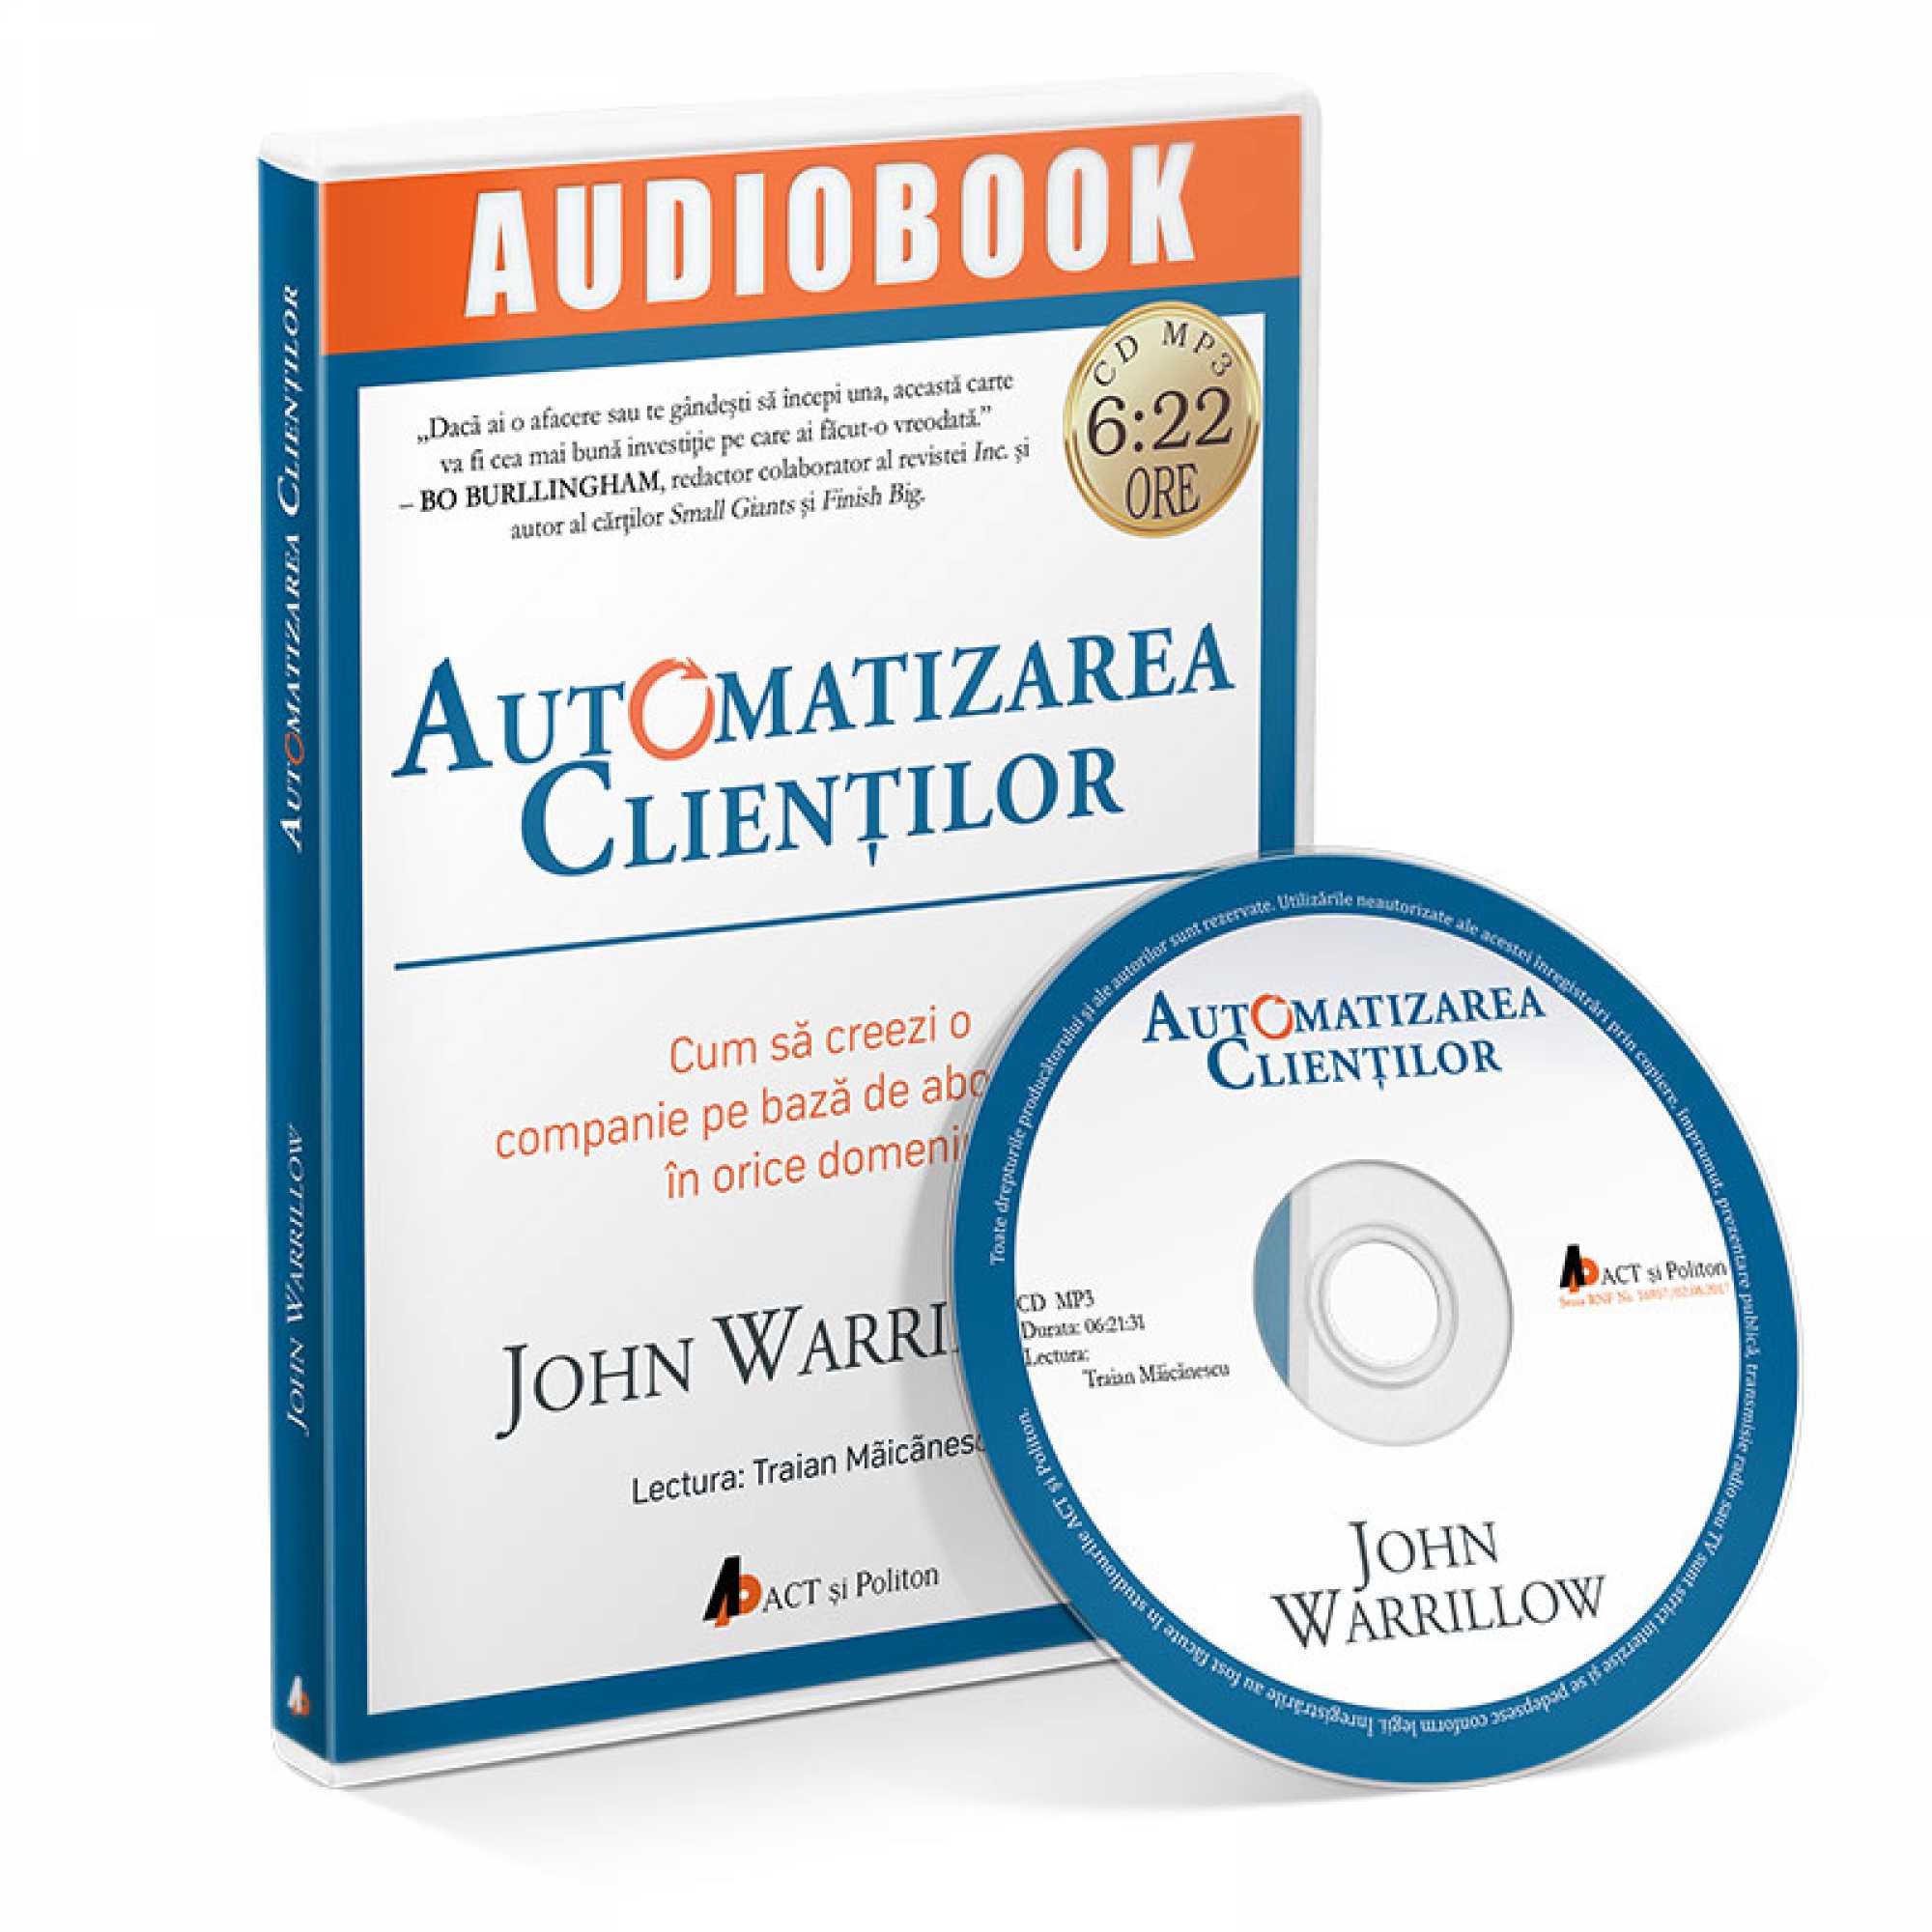 Automatizarea clientilor – Audiobook | John Warrillow carturesti.ro imagine 2022 cartile.ro